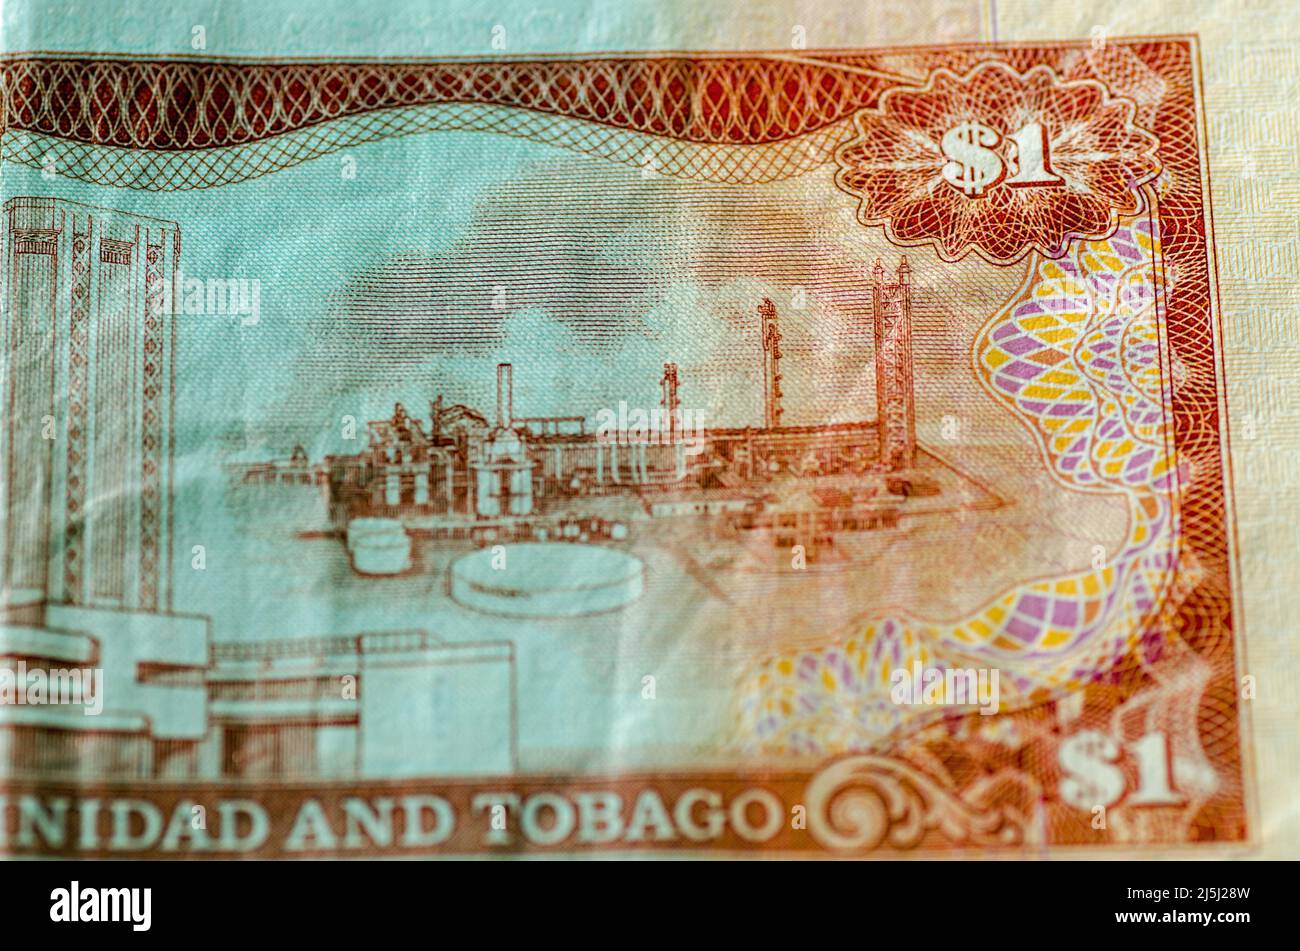 Dettaglio di una banconota da un dollaro usata da Trinidad e Tobago che mostra l'impianto di ammoniaca anidra della Trinidad Nitrogen Company al Point Lisas Foto Stock